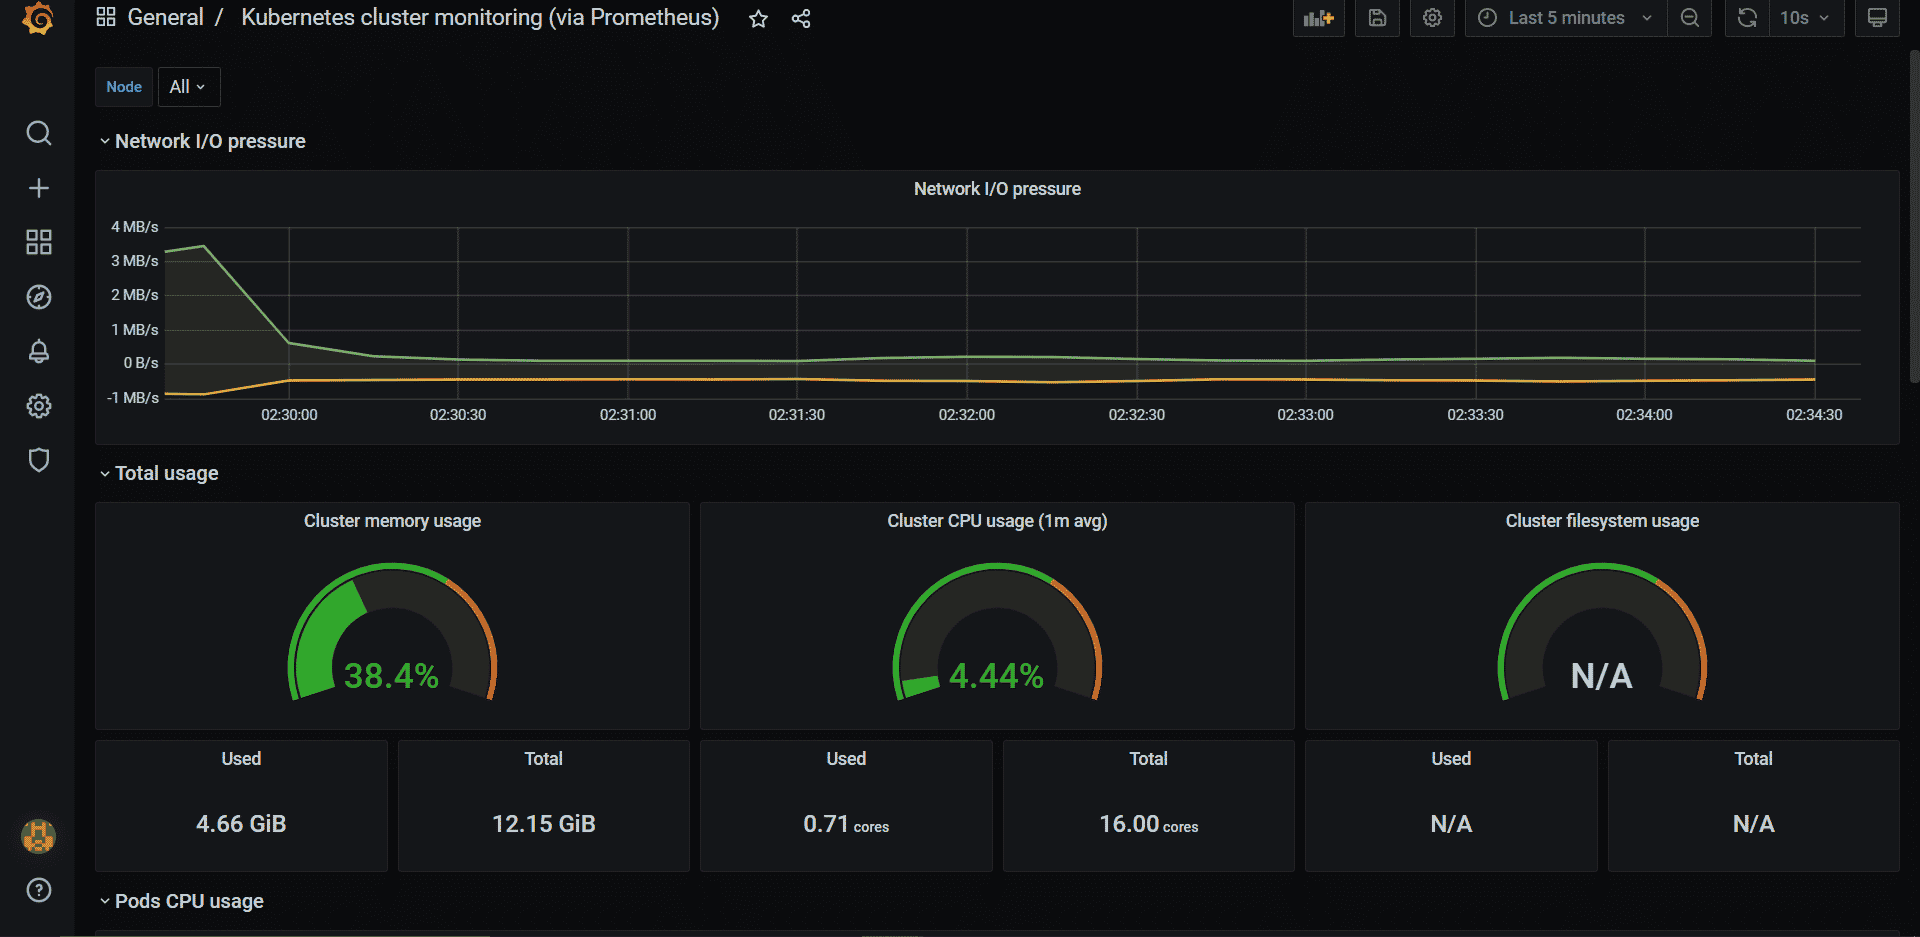 Grafana dashboard showing network I/O pressure